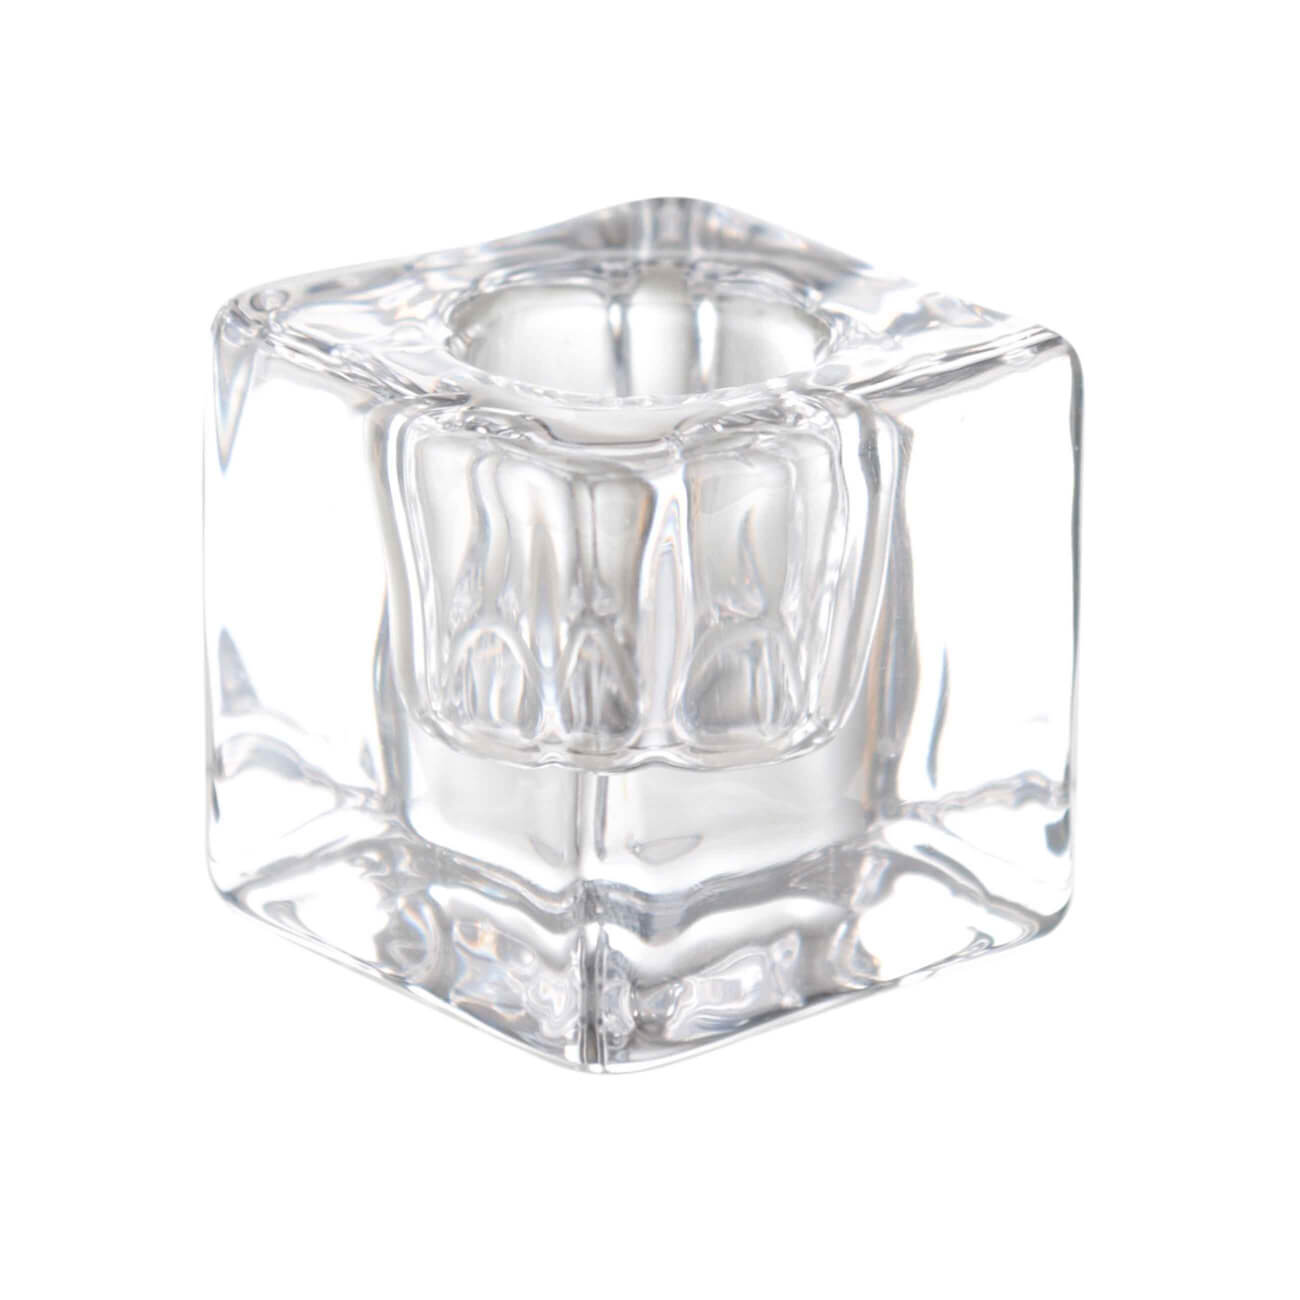 Подсвечник, 4 см, для тонкой свечи, стекло, Cube подсвечник на 1 свечу с перламутром 7 5 см